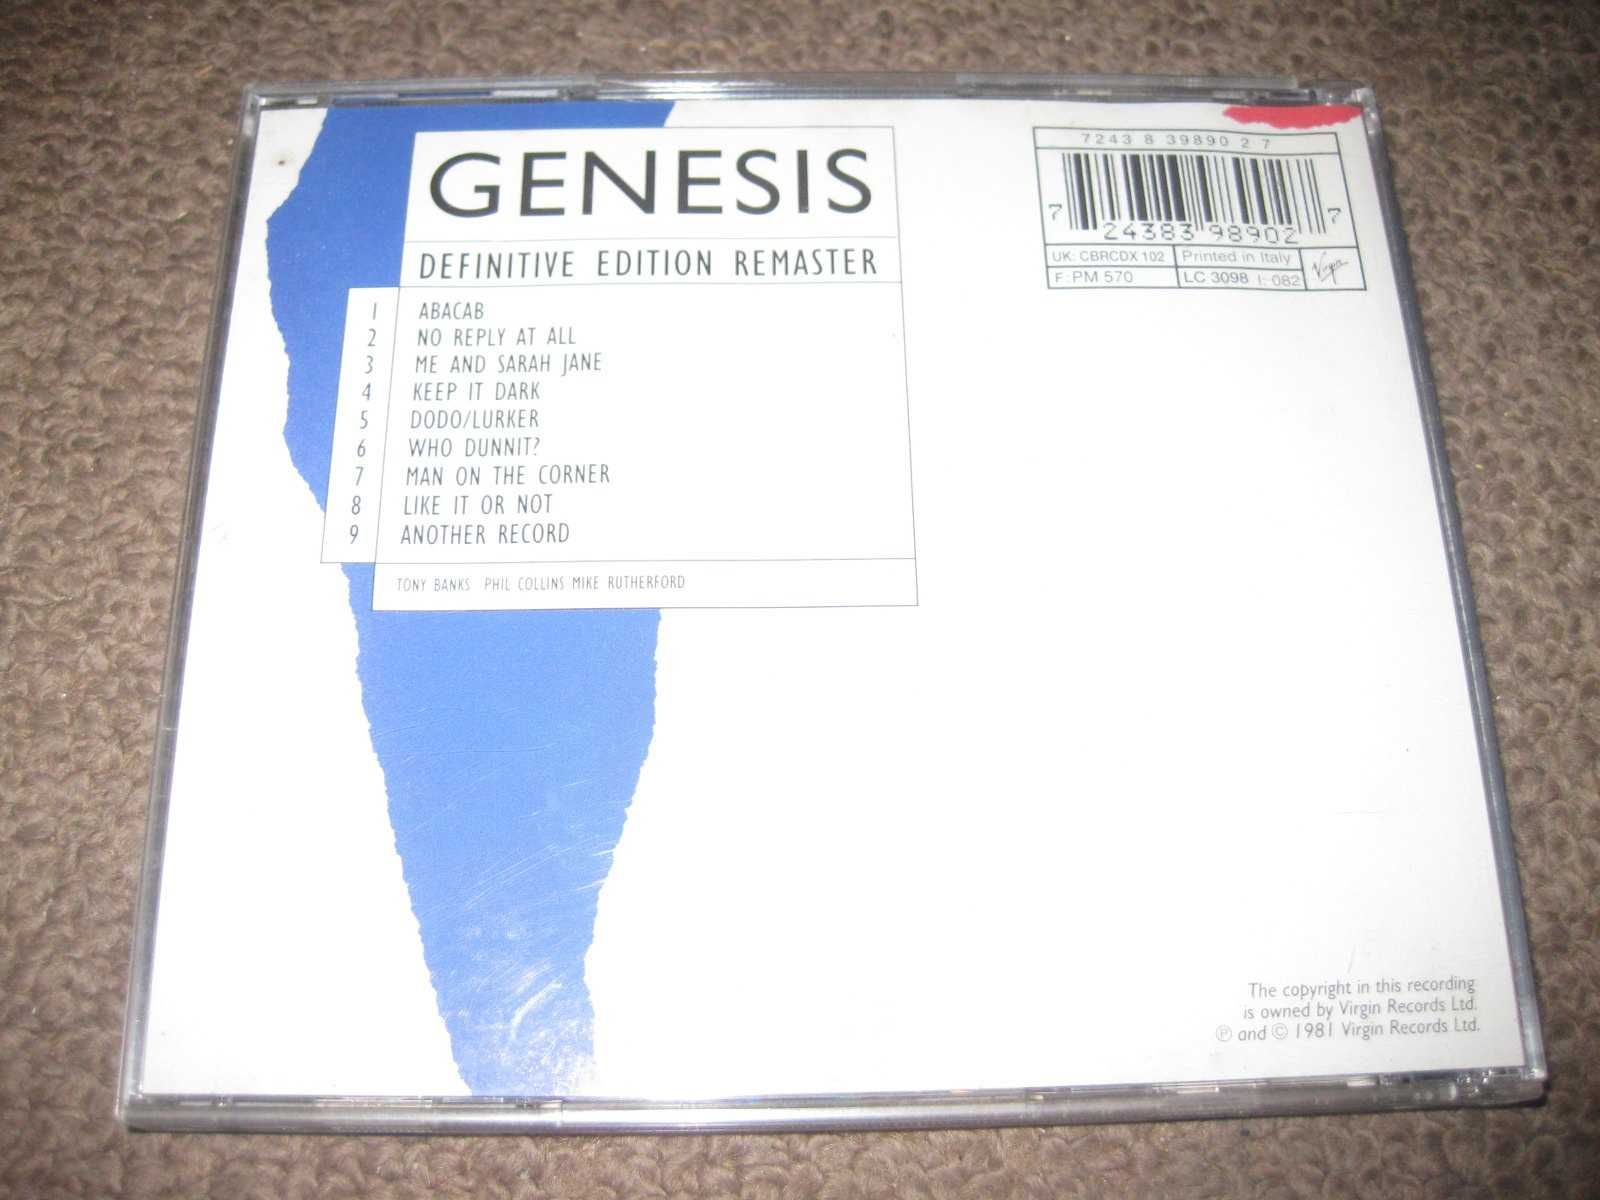 CD dos Genesis "Abacab" Portes Grátis!